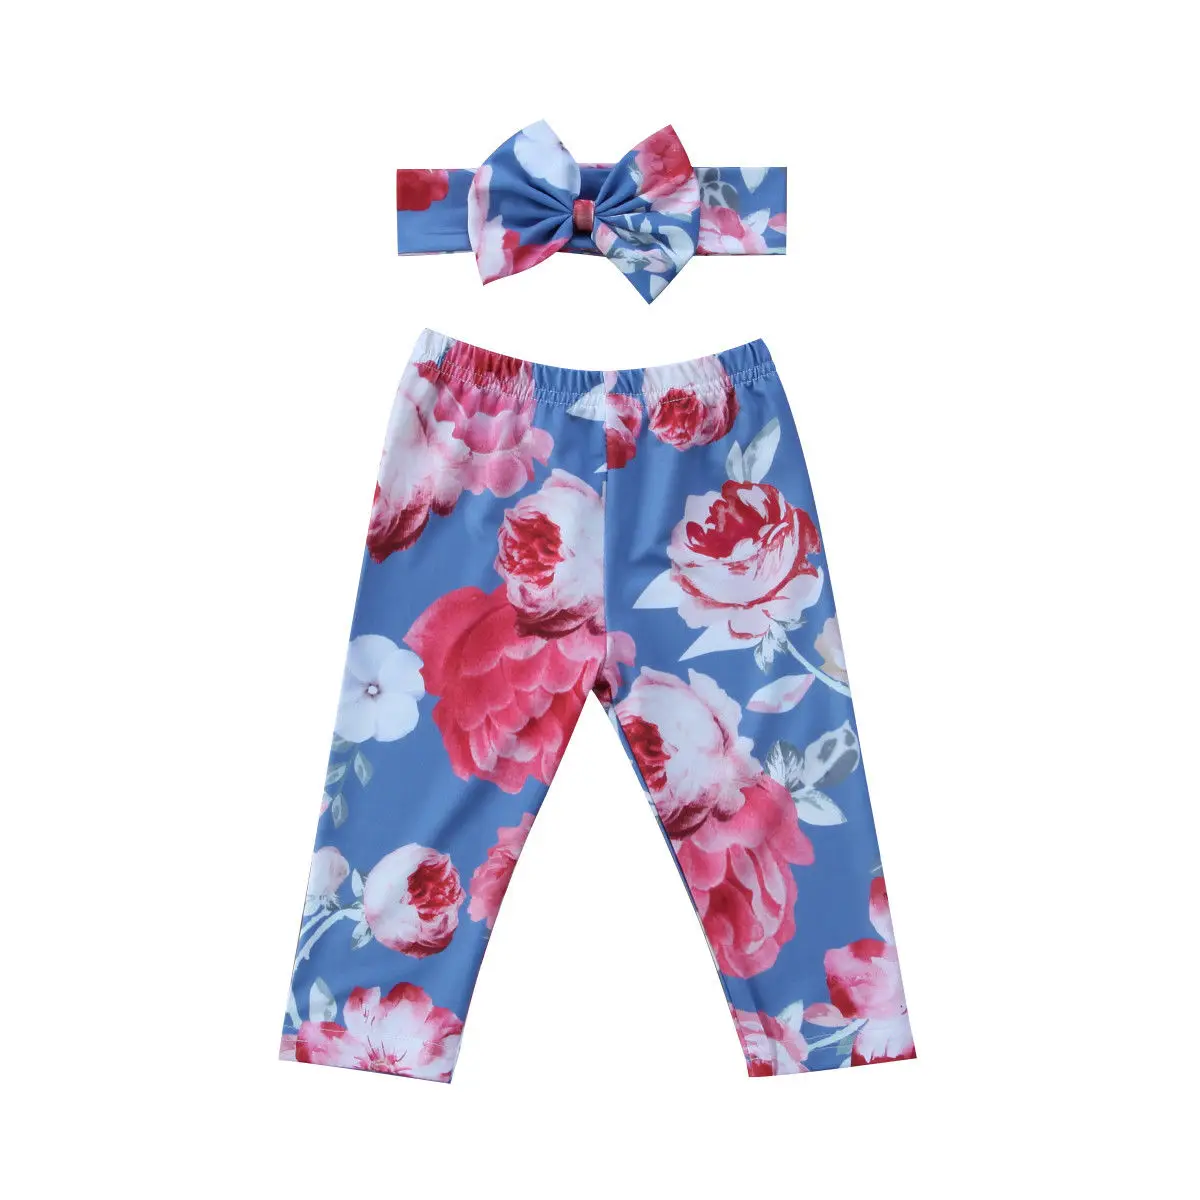 Милые леггинсы с цветочным принтом для новорожденных девочек длинные штаны+ повязка на голову, комплект одежды для детей от 0 до 24 месяцев - Цвет: Синий